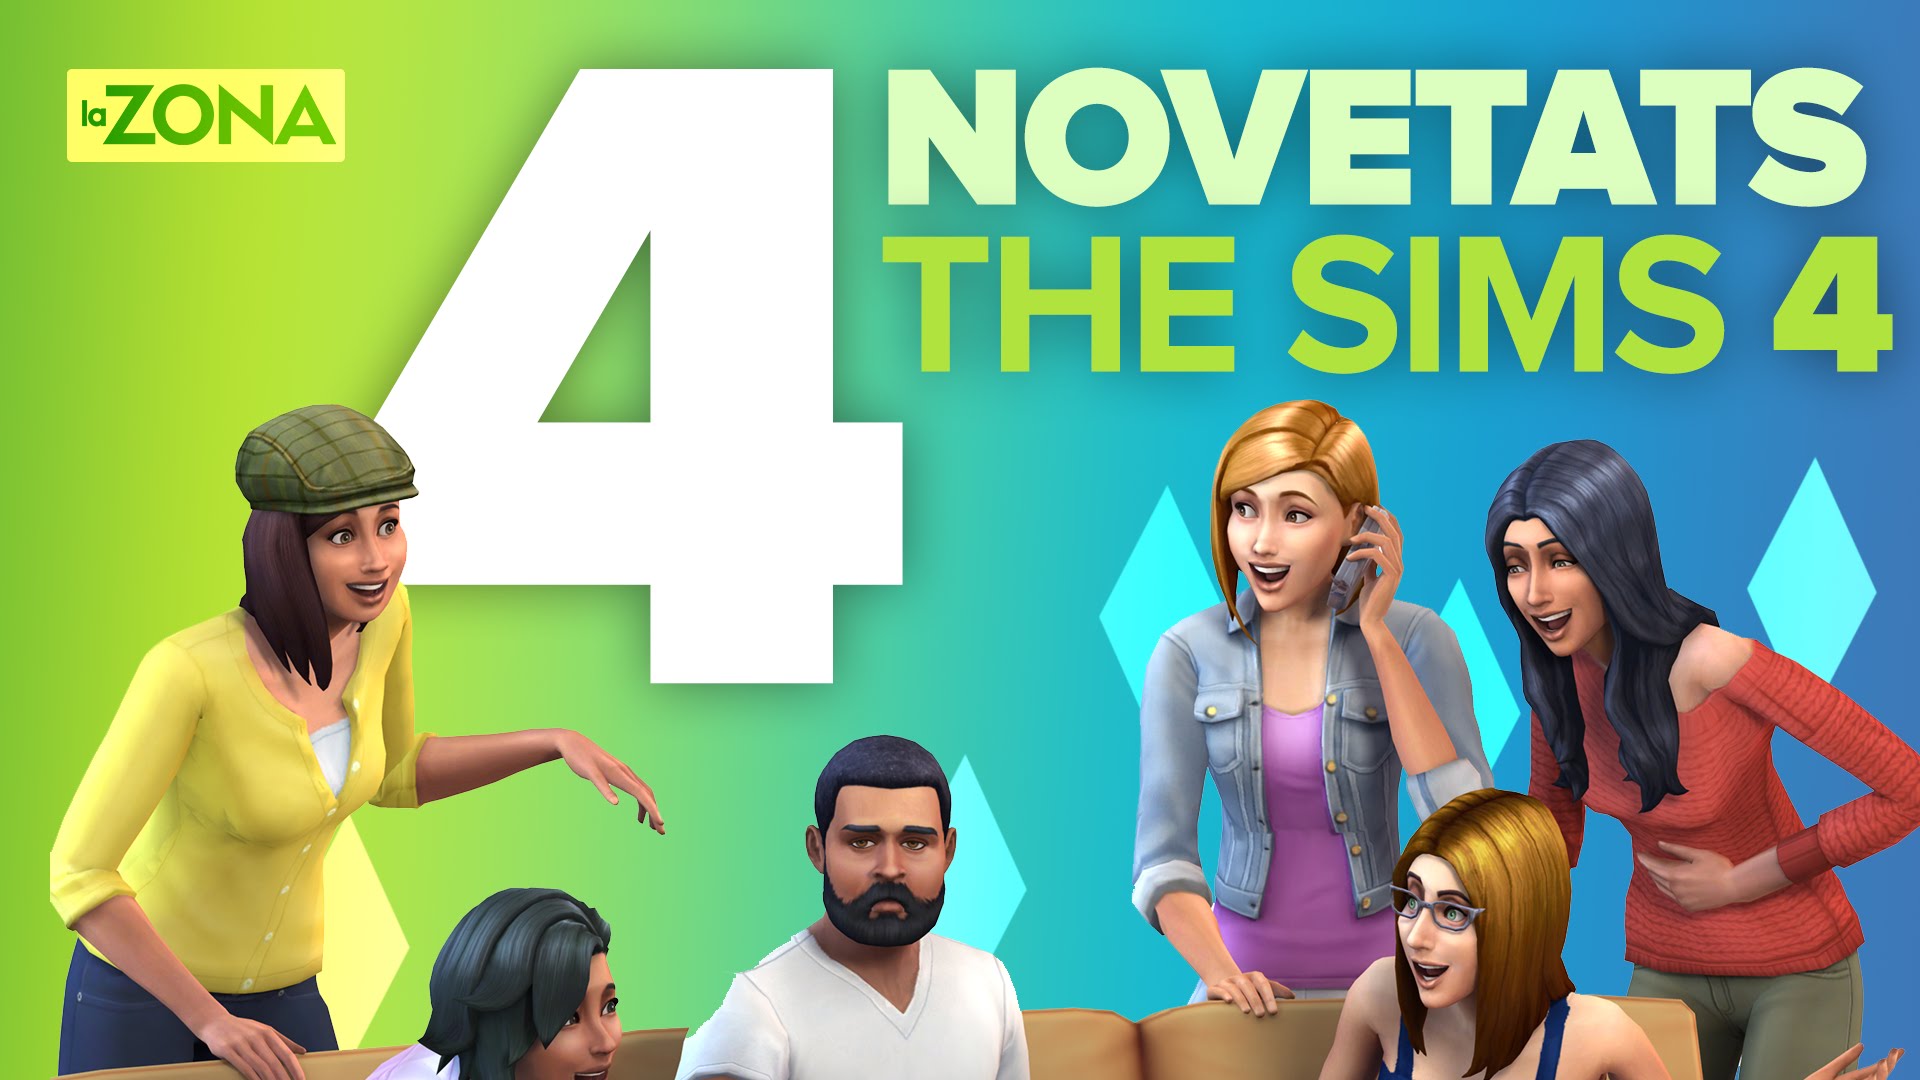 La Zona — 4 novetats estrella de The Sims 4 de Nil66